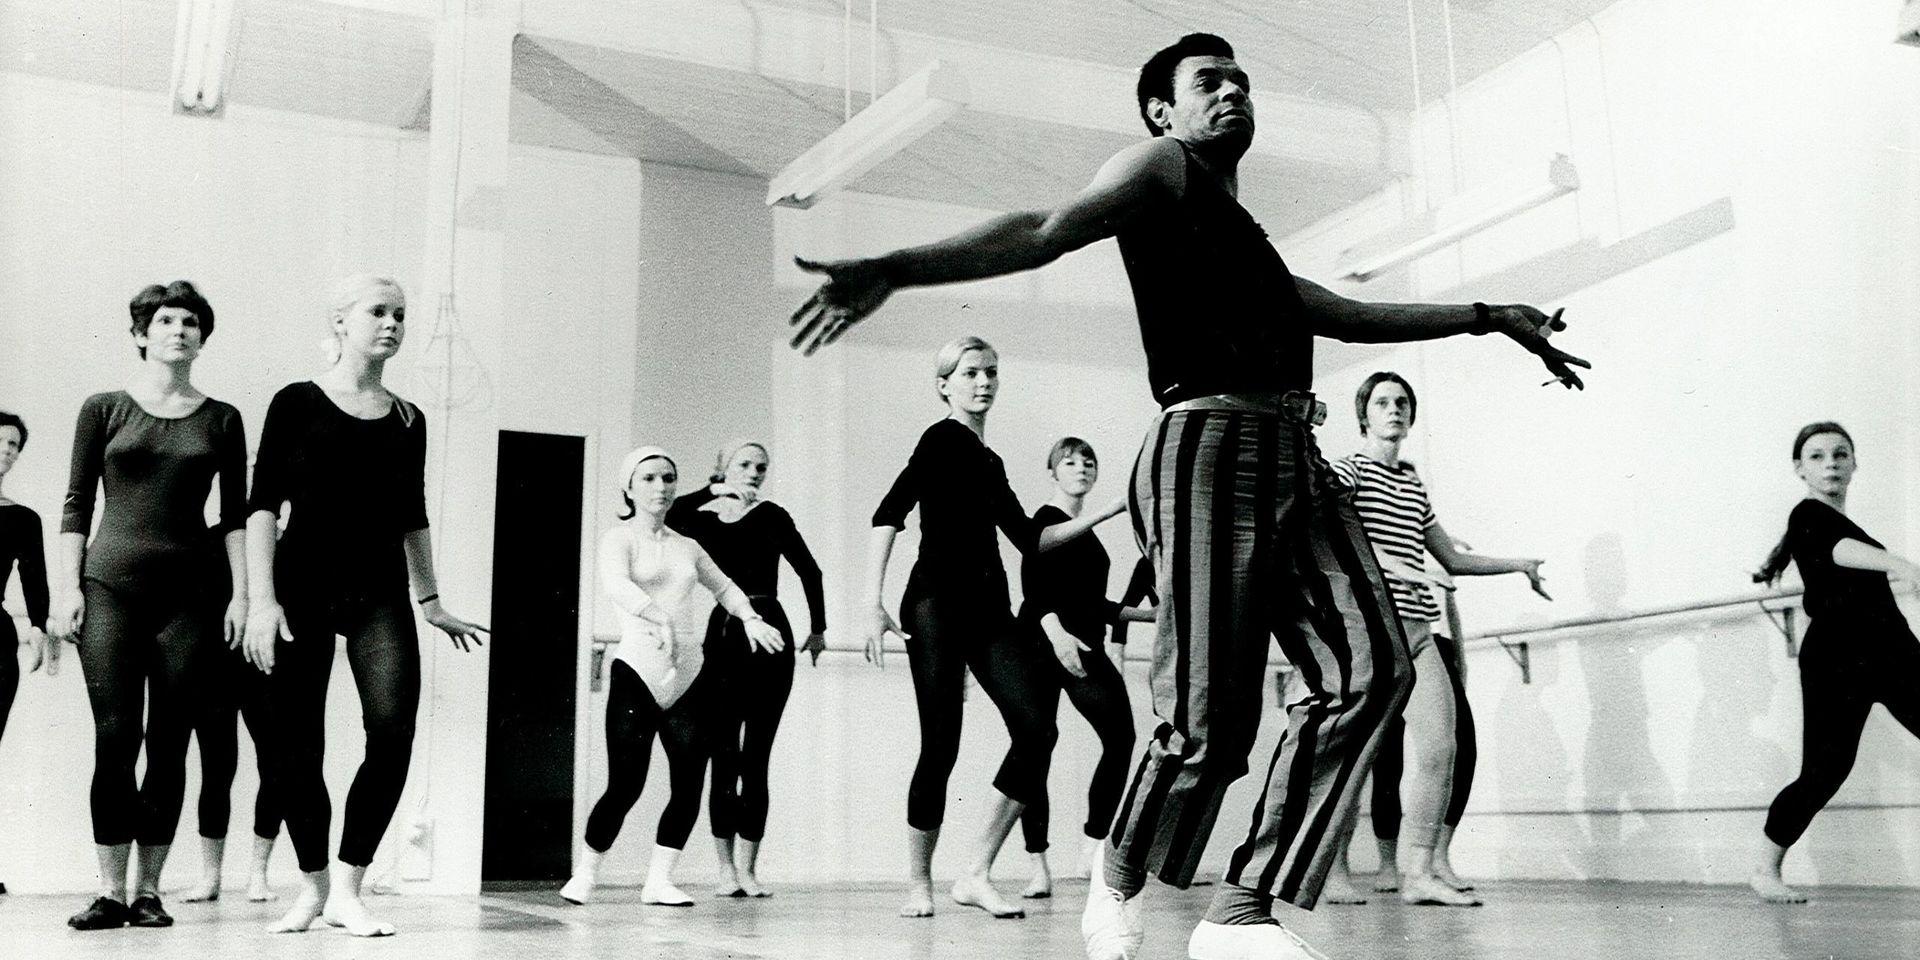 Claude Marchant undervisar på Balettakademien i Göteborg, sent 1960-tal. Bland eleverna syns Ewa Michalik, Stefan Ahlqvist och Pia Thörngren. Fotograf okänd  Bild från Claude Marchant och Bo Westerholms arkiv.